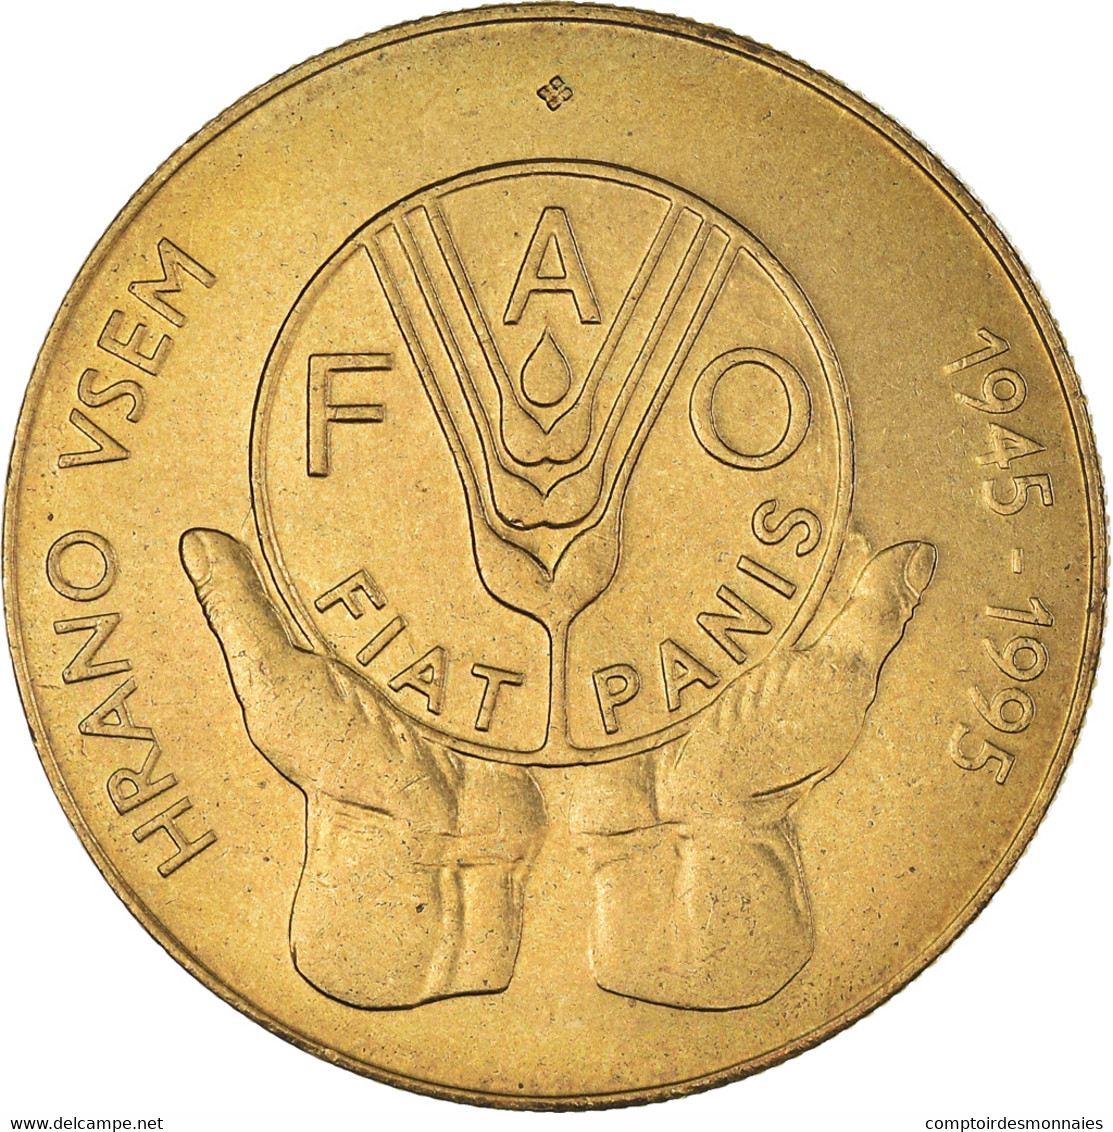 Monnaie, Slovénie, 5 Tolarjev, 1995, SUP, Nickel-Cuivre, KM:21 - Slovenië